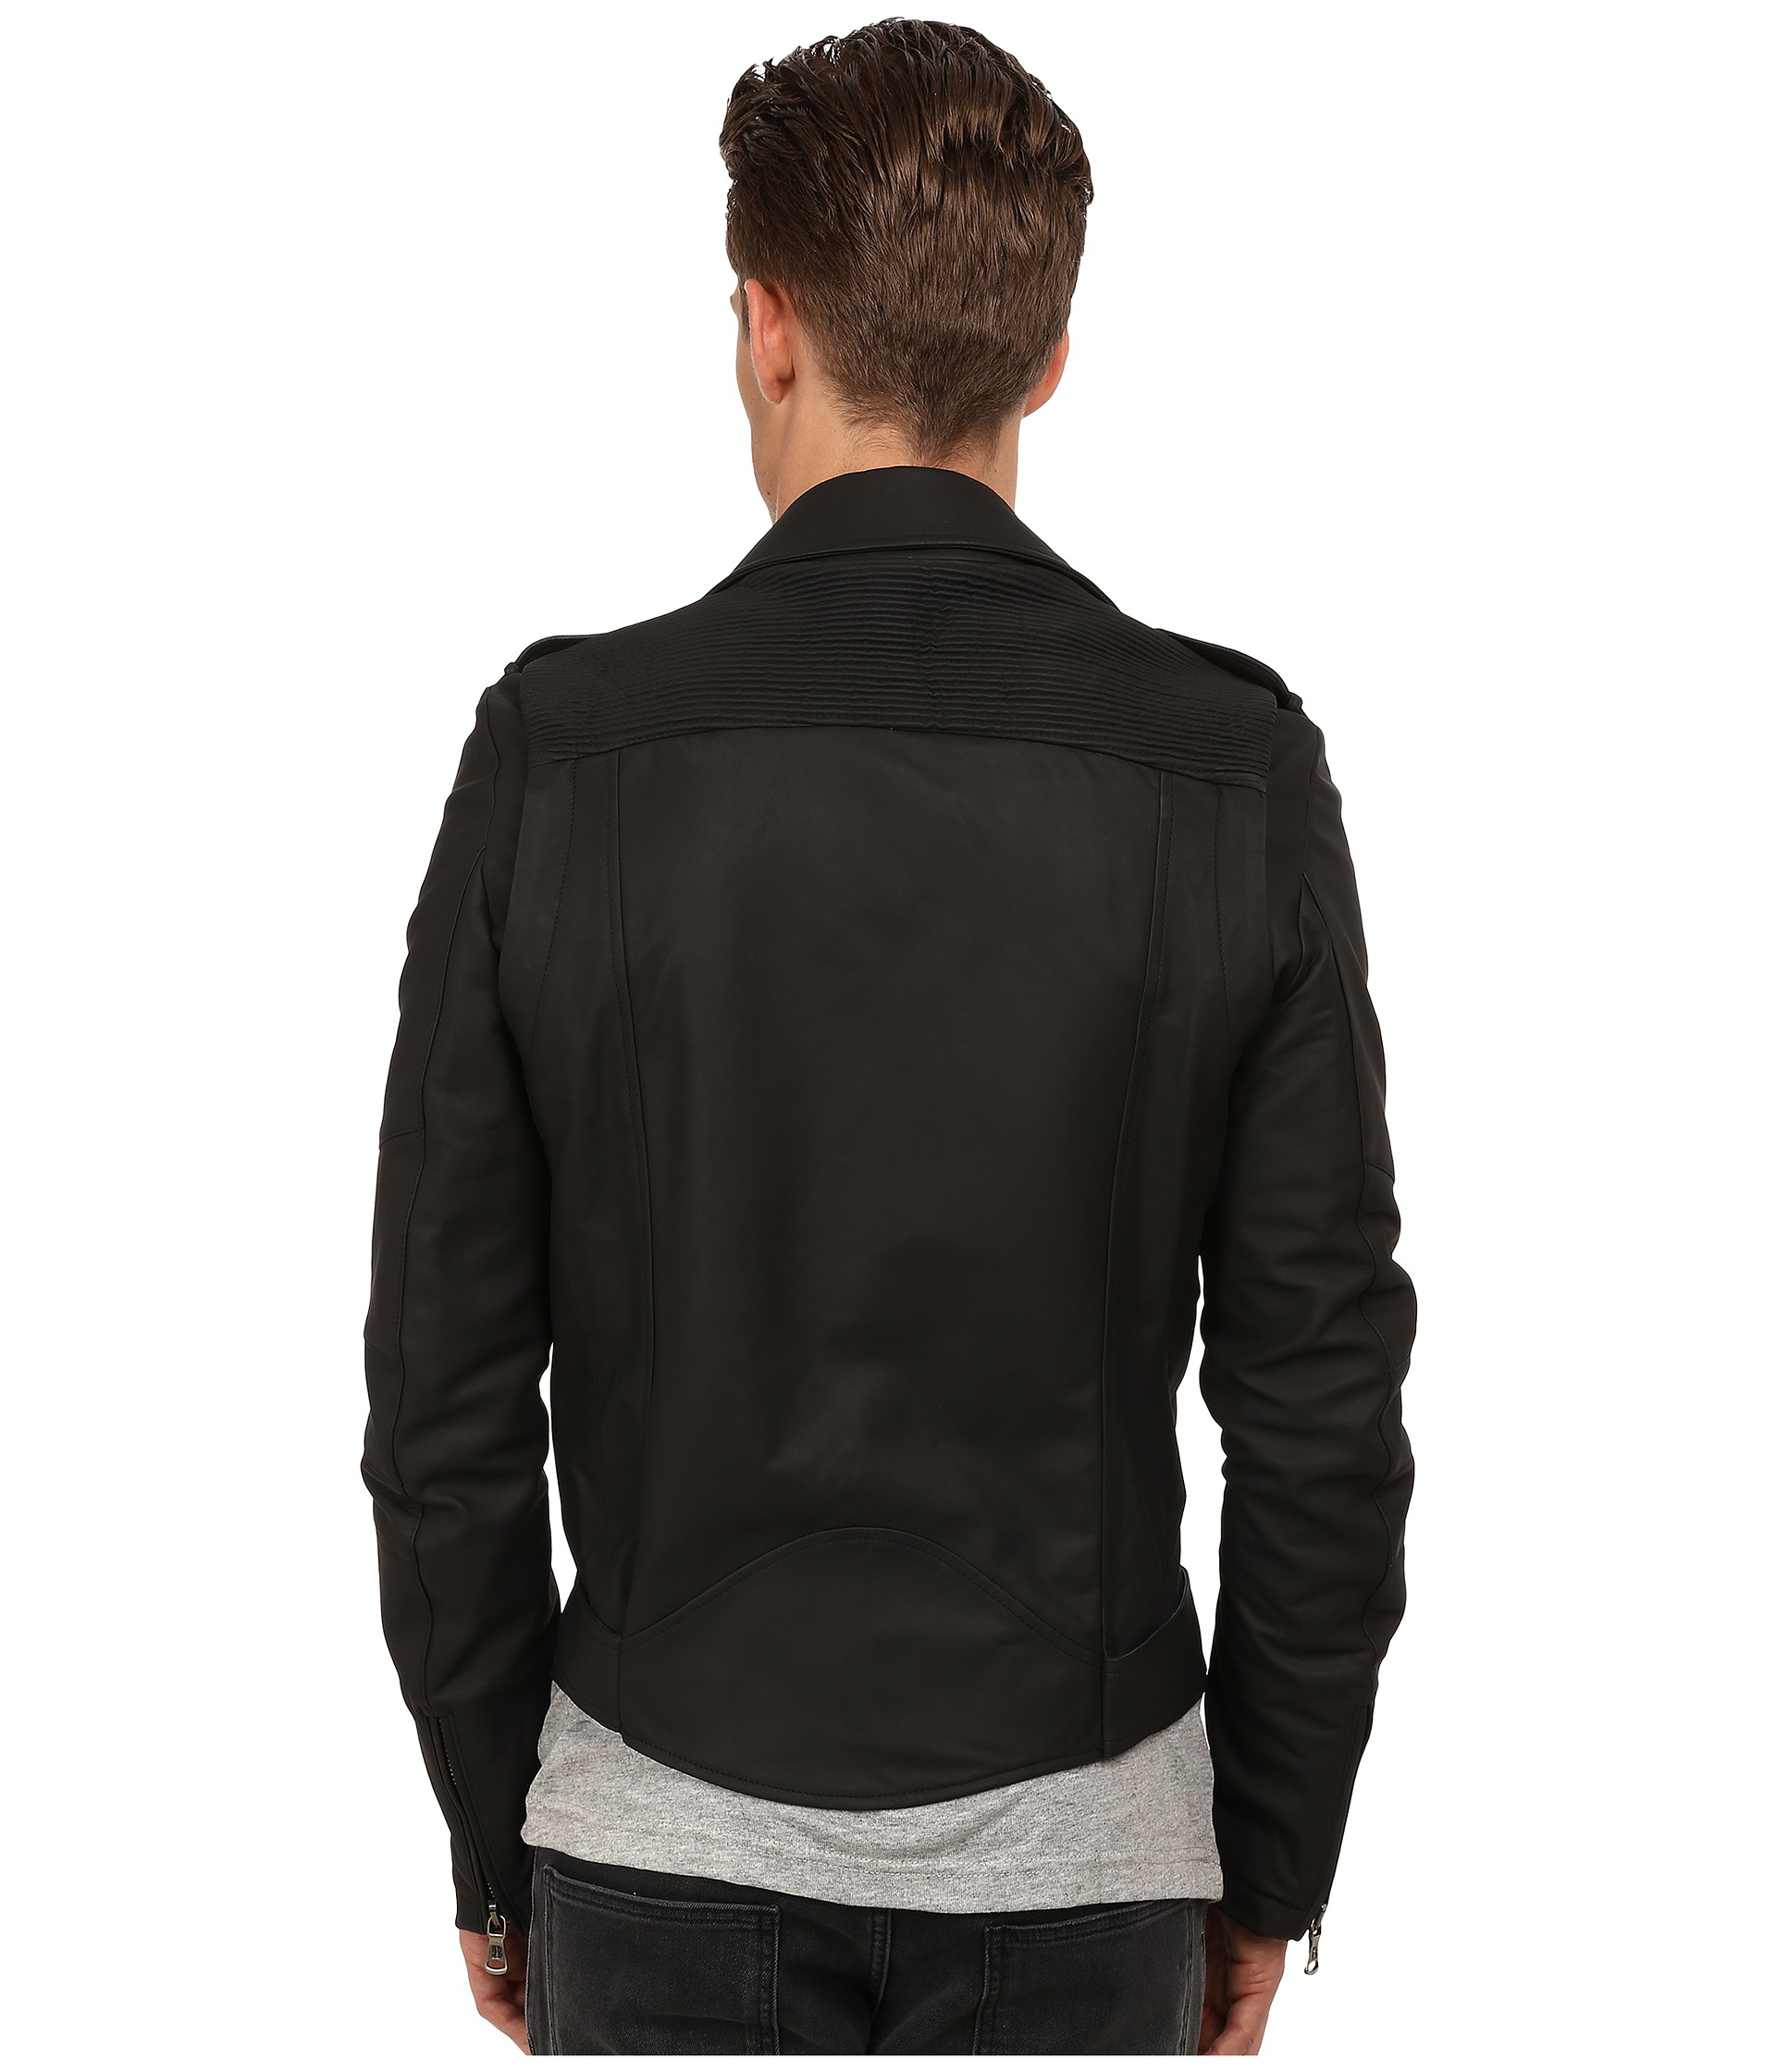 Balmain Waxed Cotton Biker Jacket in Black for Men - Lyst